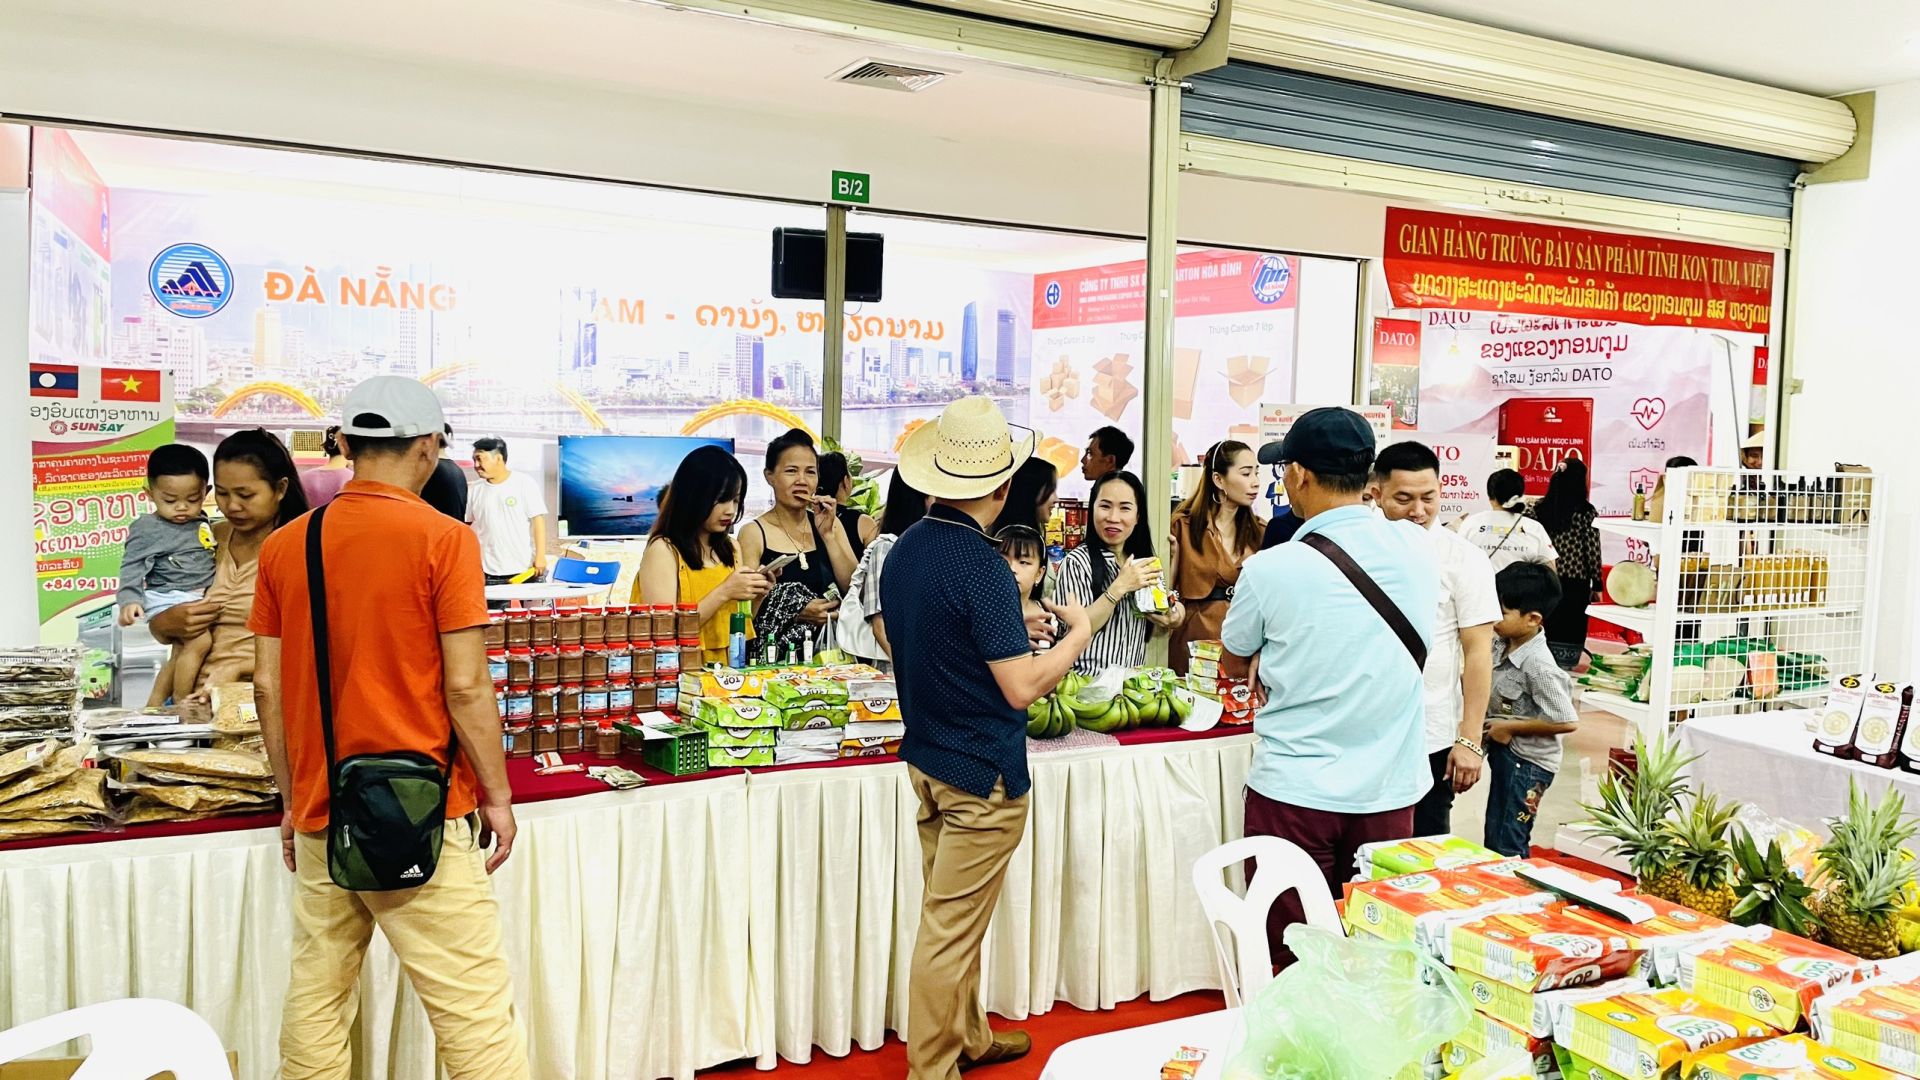 Trước đó, Hội chợ triển lãm hữu nghị Lào – Việt Nam đã được long trọng tổ chức tại Trung tâm thương mại tỉnh Sekong, Lào